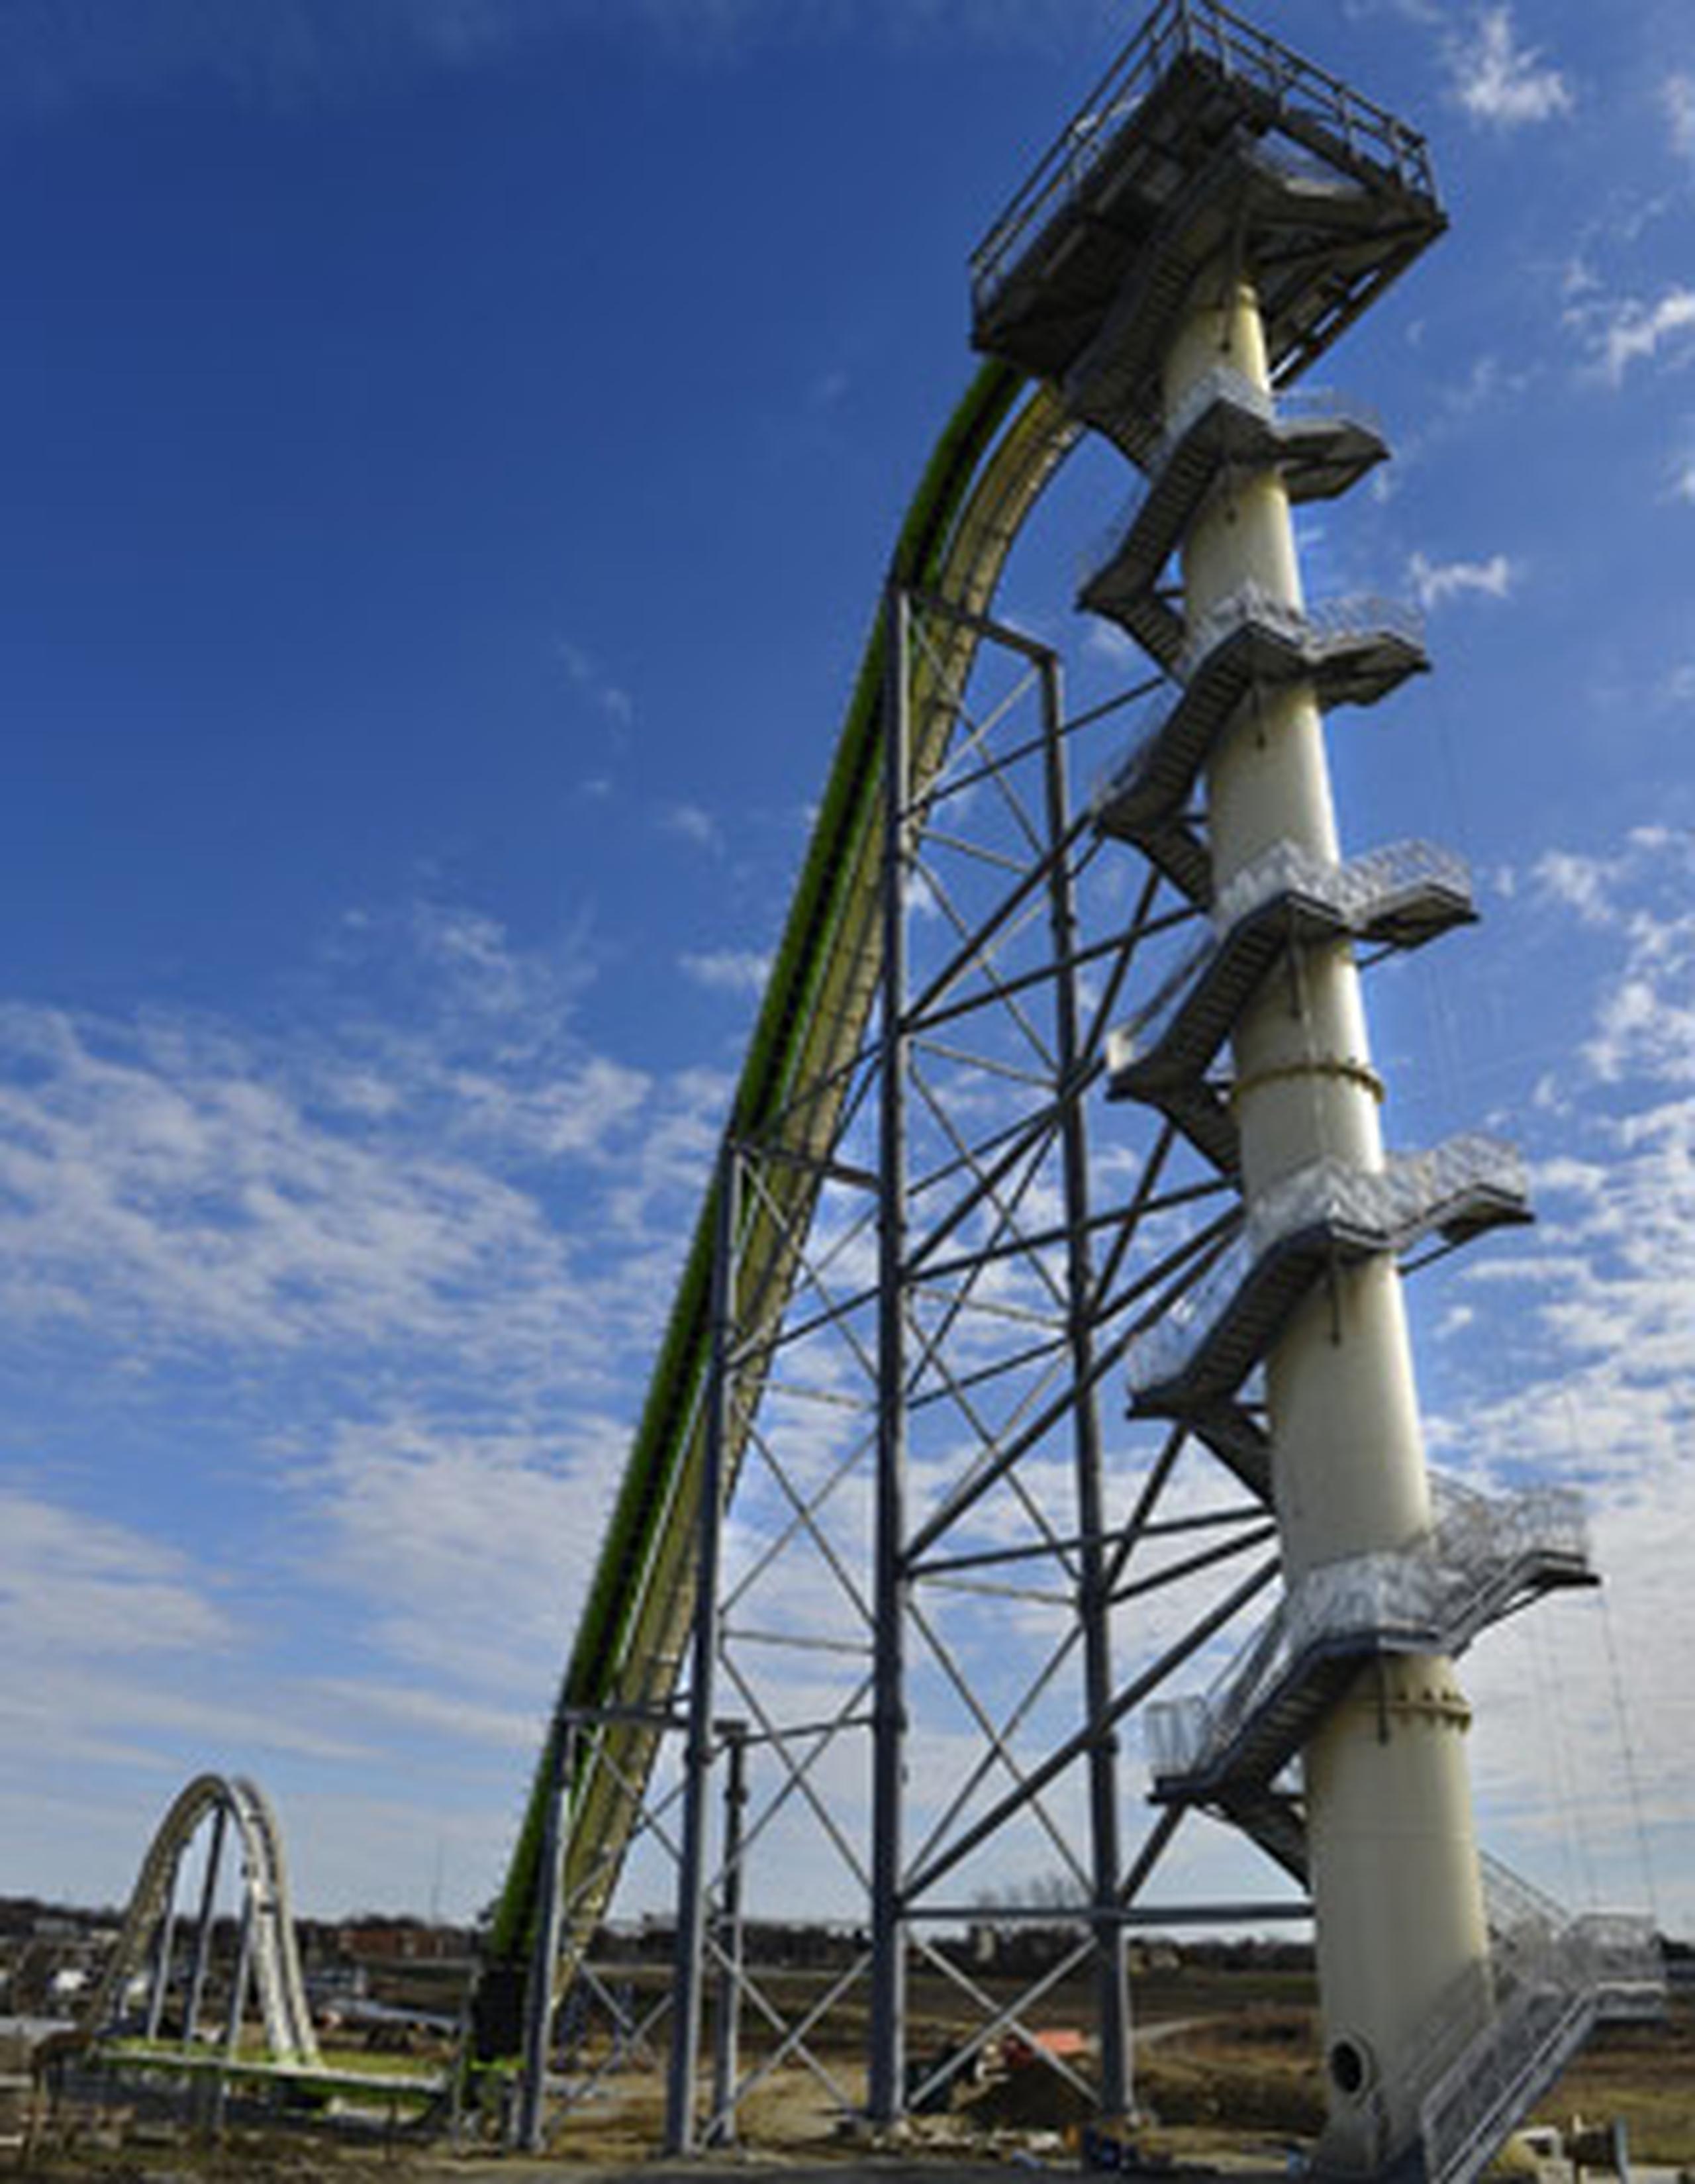 El libro Guinness de Marcas Mundiales había certificado que Verruckt era el tobogán de agua más alto del mundo. (Jill Toyoshiba/The Kansas City Star via AP, File)